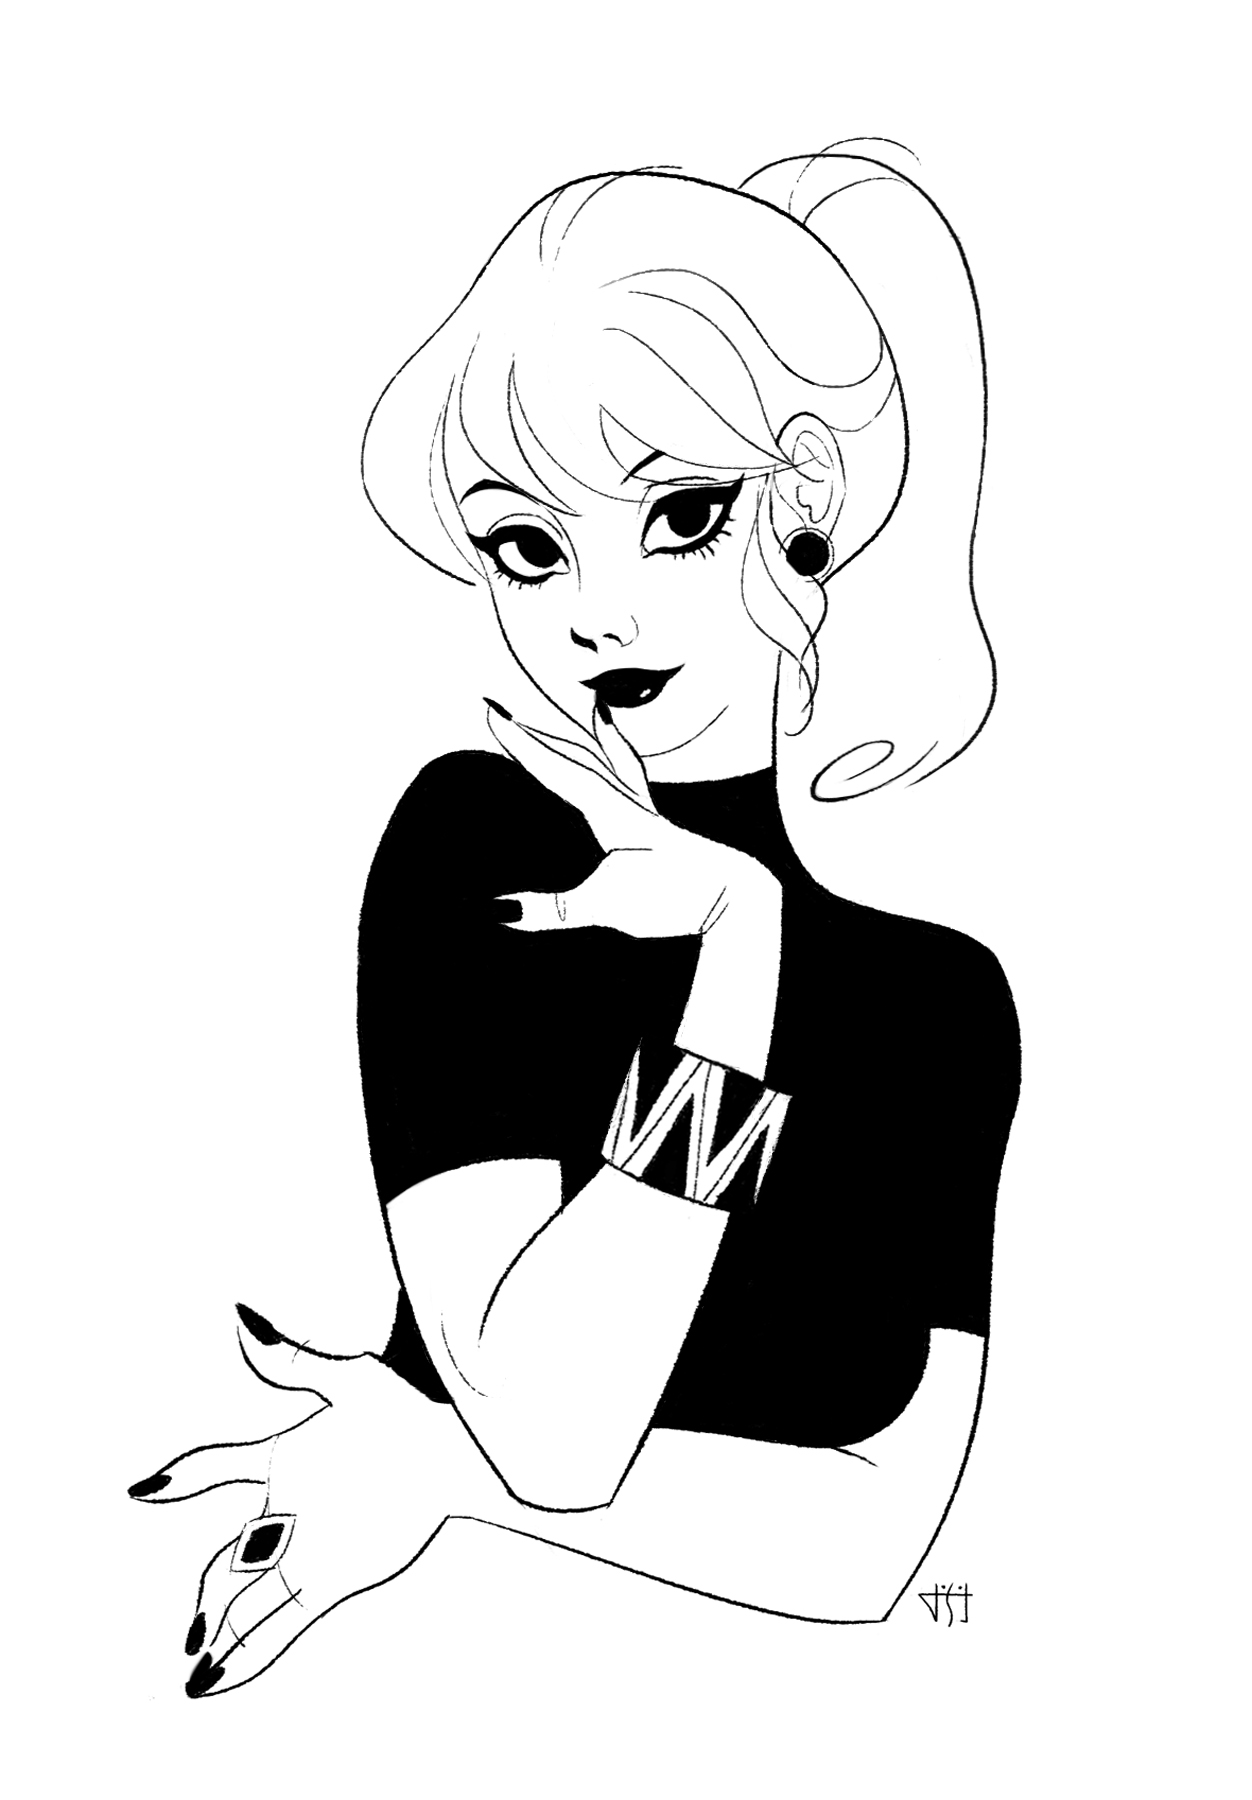 2D Girl in Black Dress Black and White Illustration